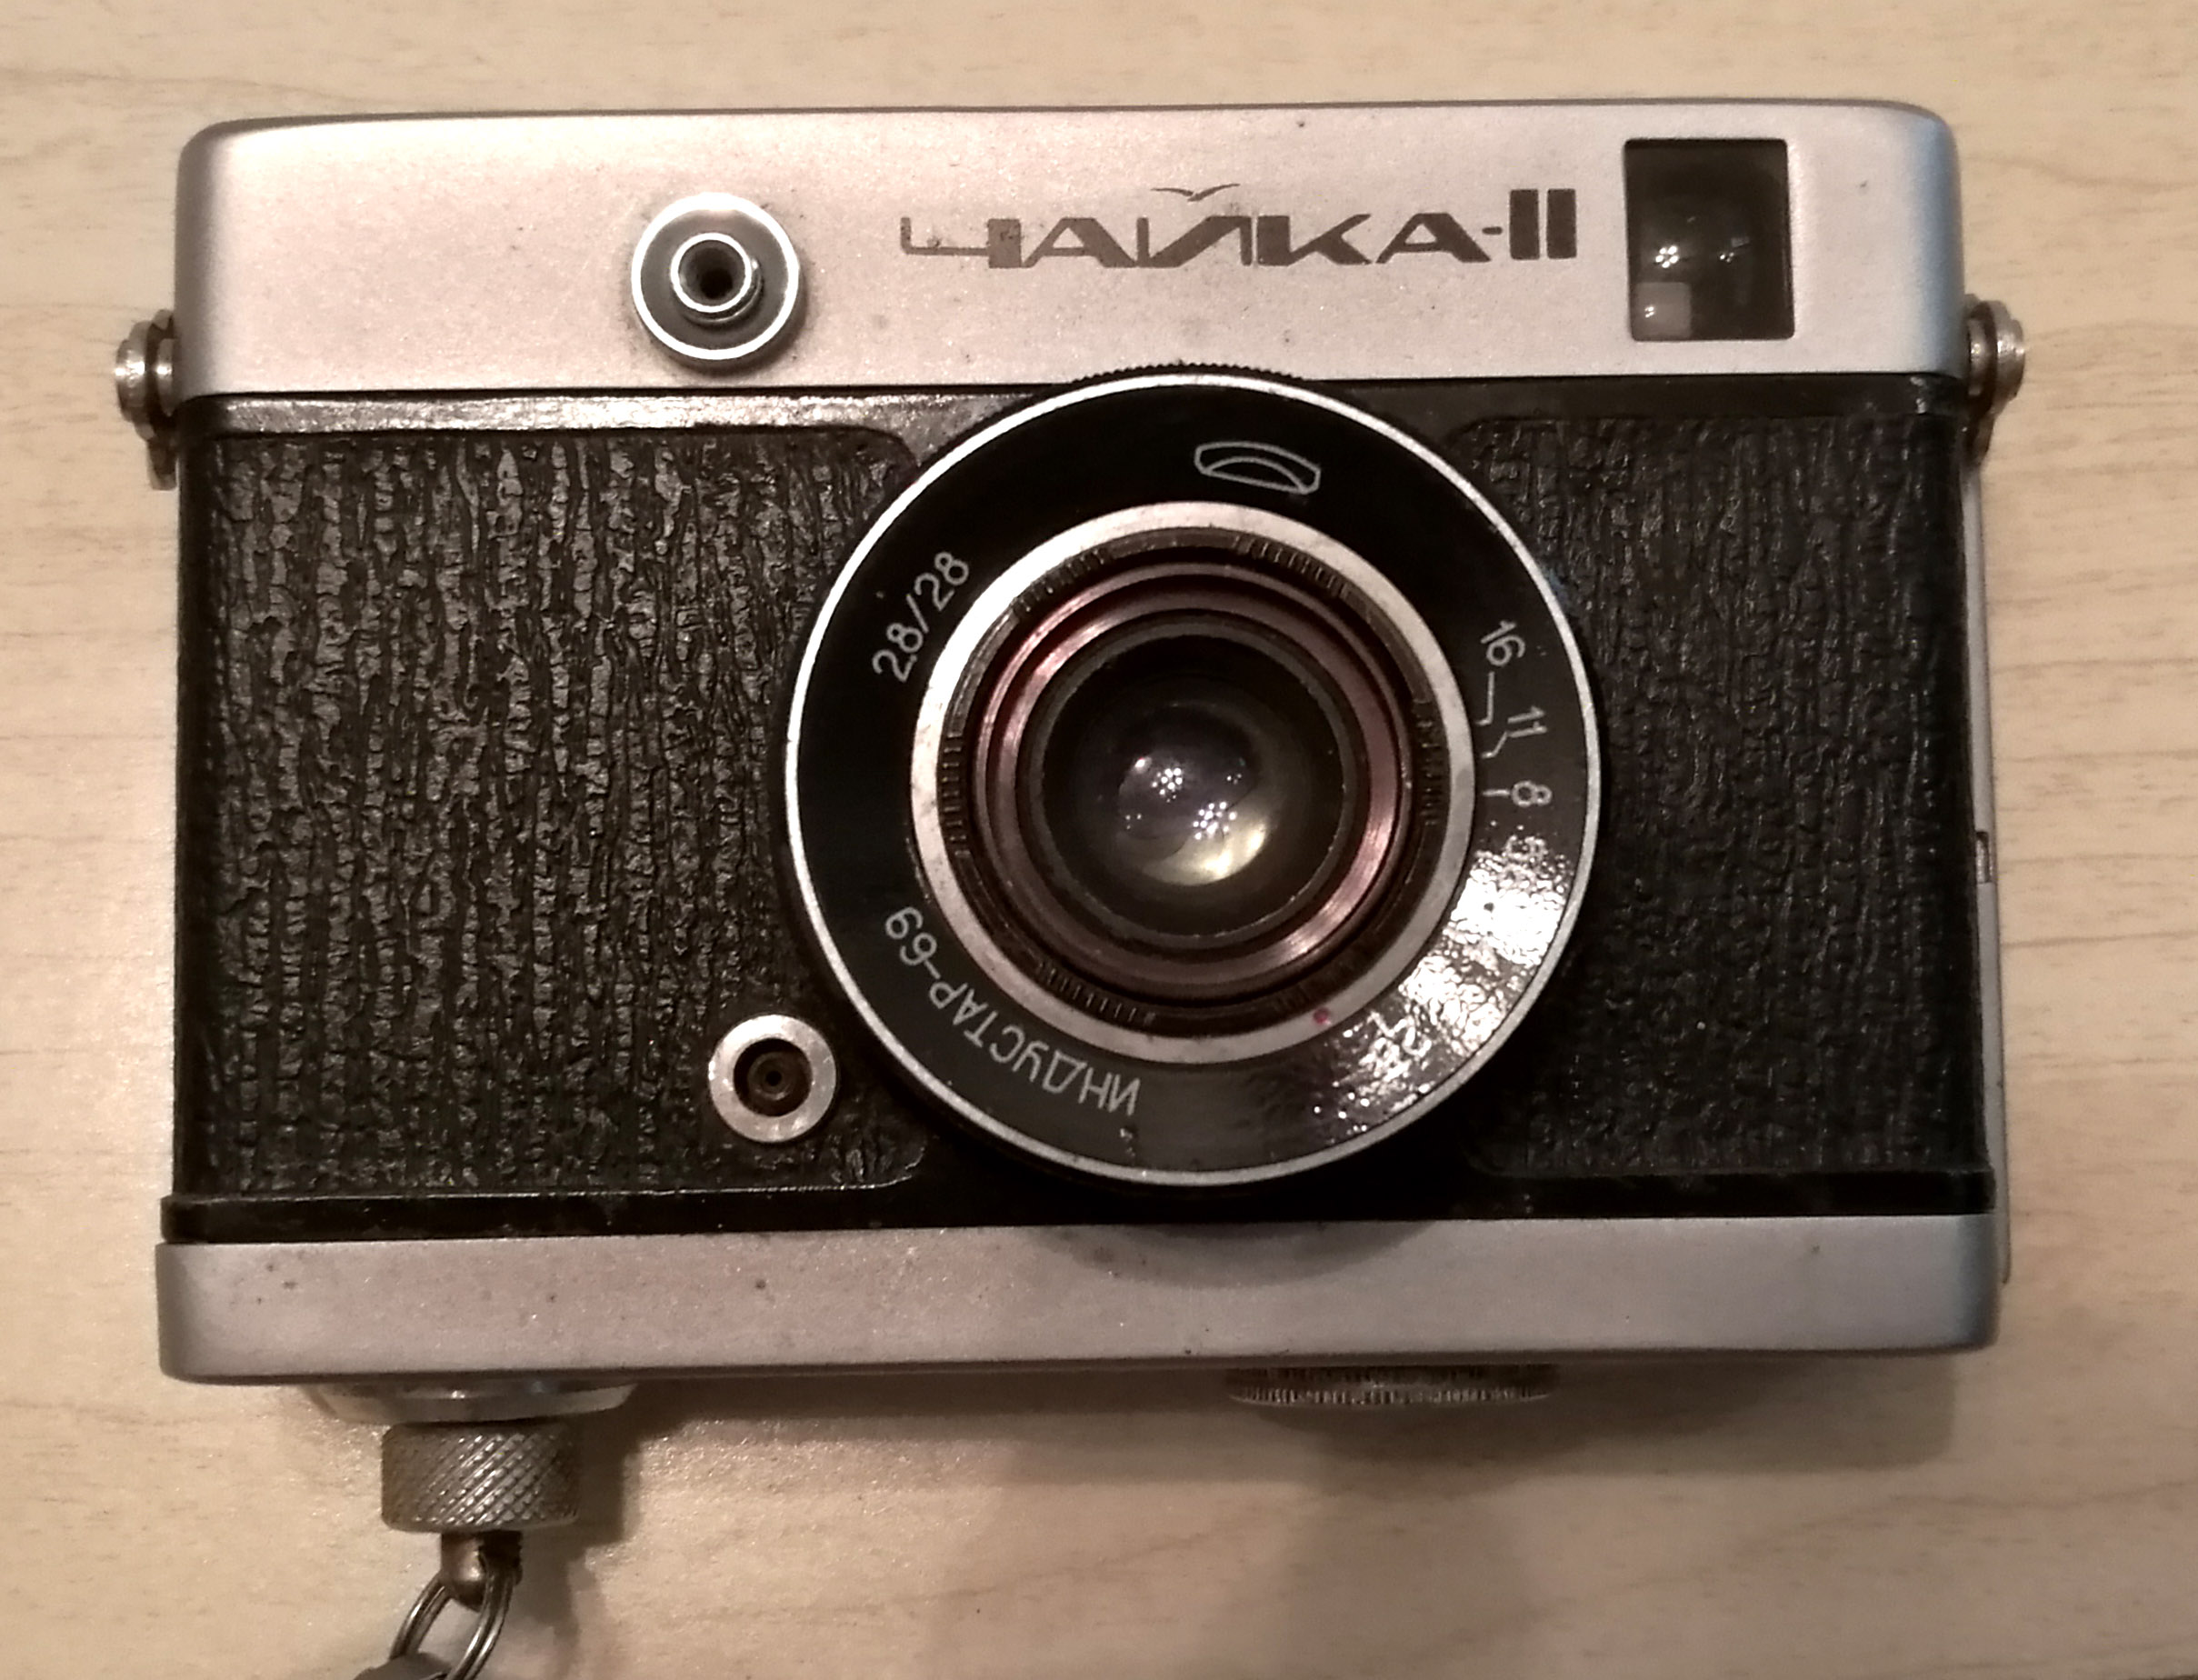 收藏佳品-恰一卡II,俄罗斯恰伊卡，72张金属半幅相机